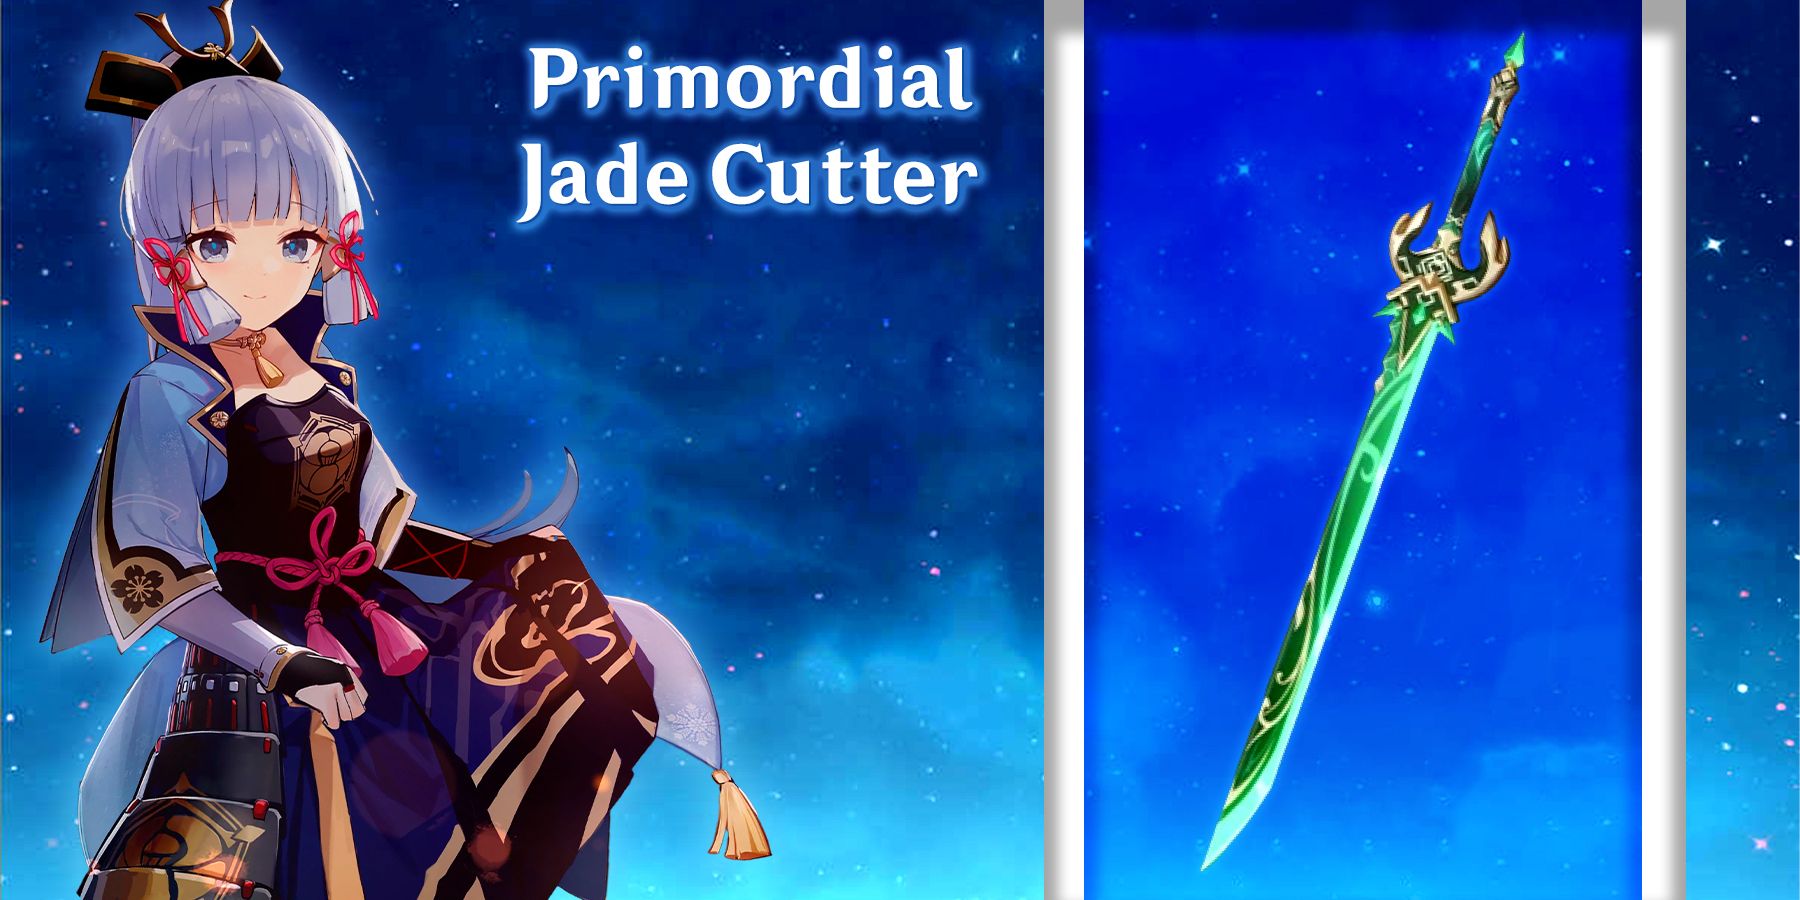 ayaka holding primordial jade cutter in genshin impact